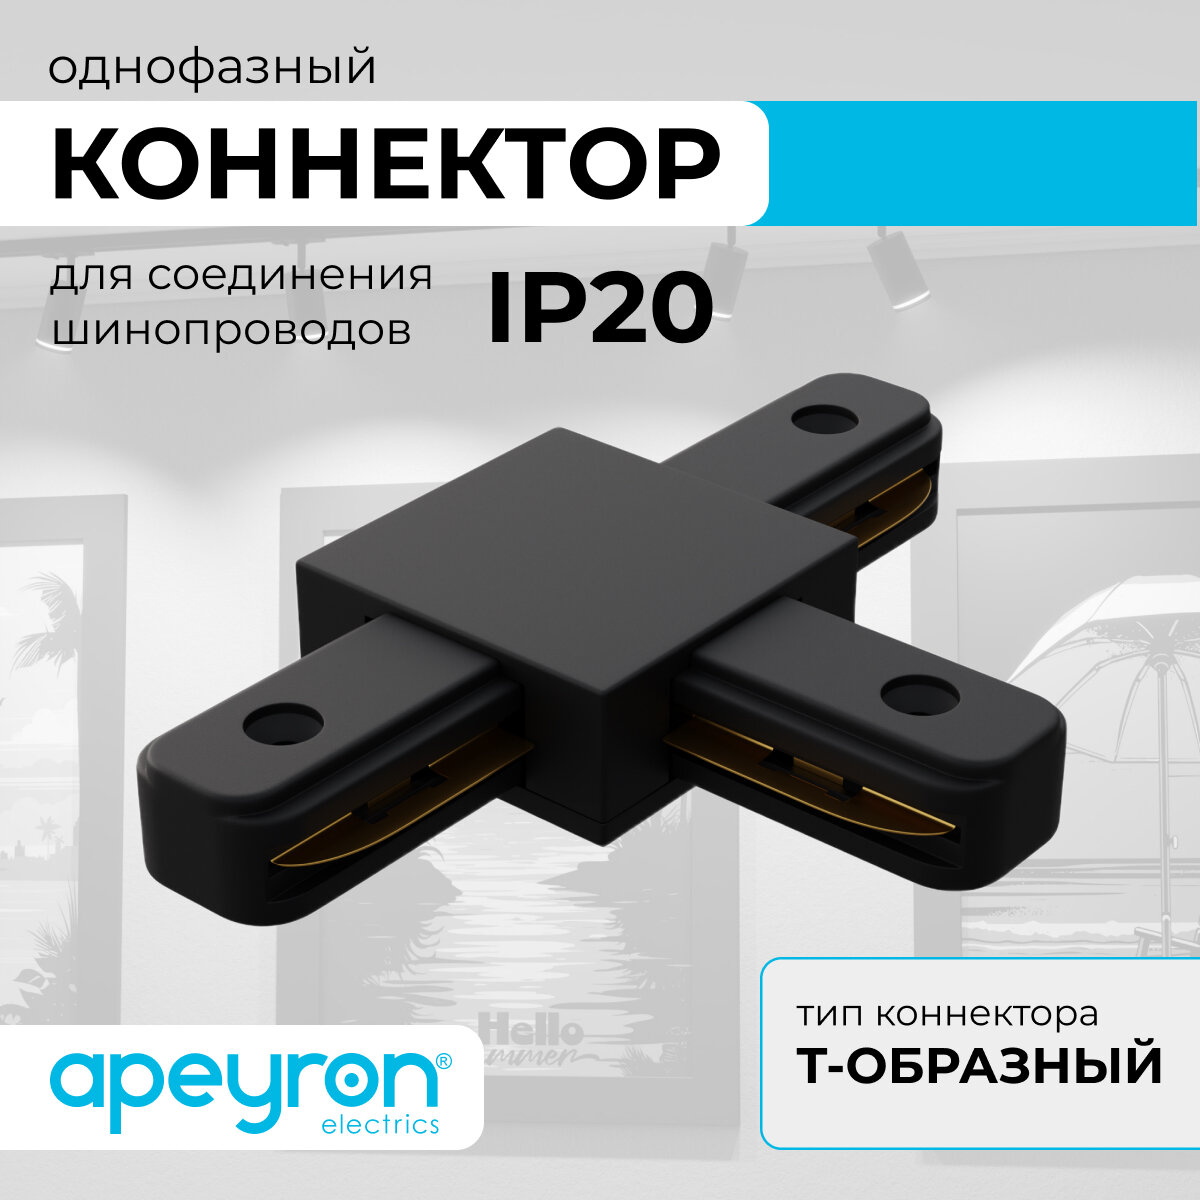 Коннектор Т-образный Apeyron 09-125 однофазный для накладного/подвесного шинопровода IP20 105х70х18мм чёрный пластик